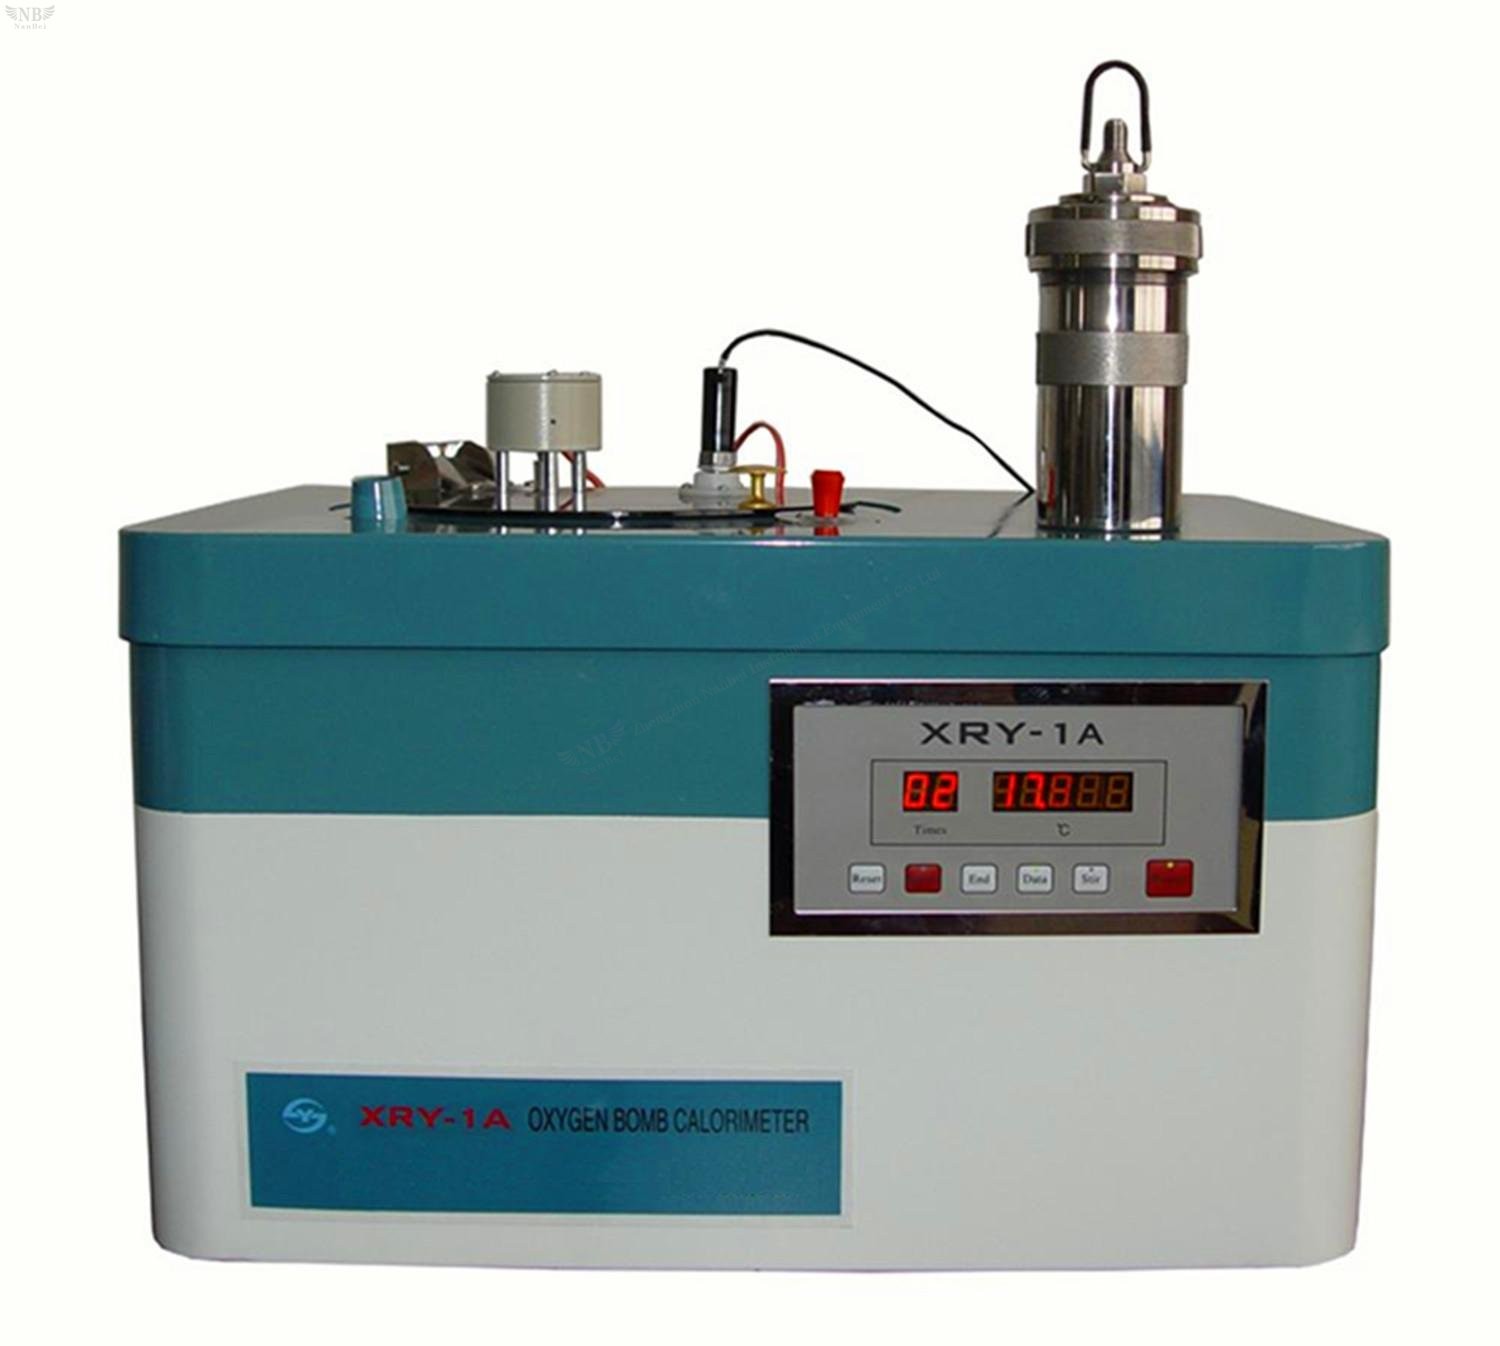 XRY-1A Oxygen Bomb Calorimeter